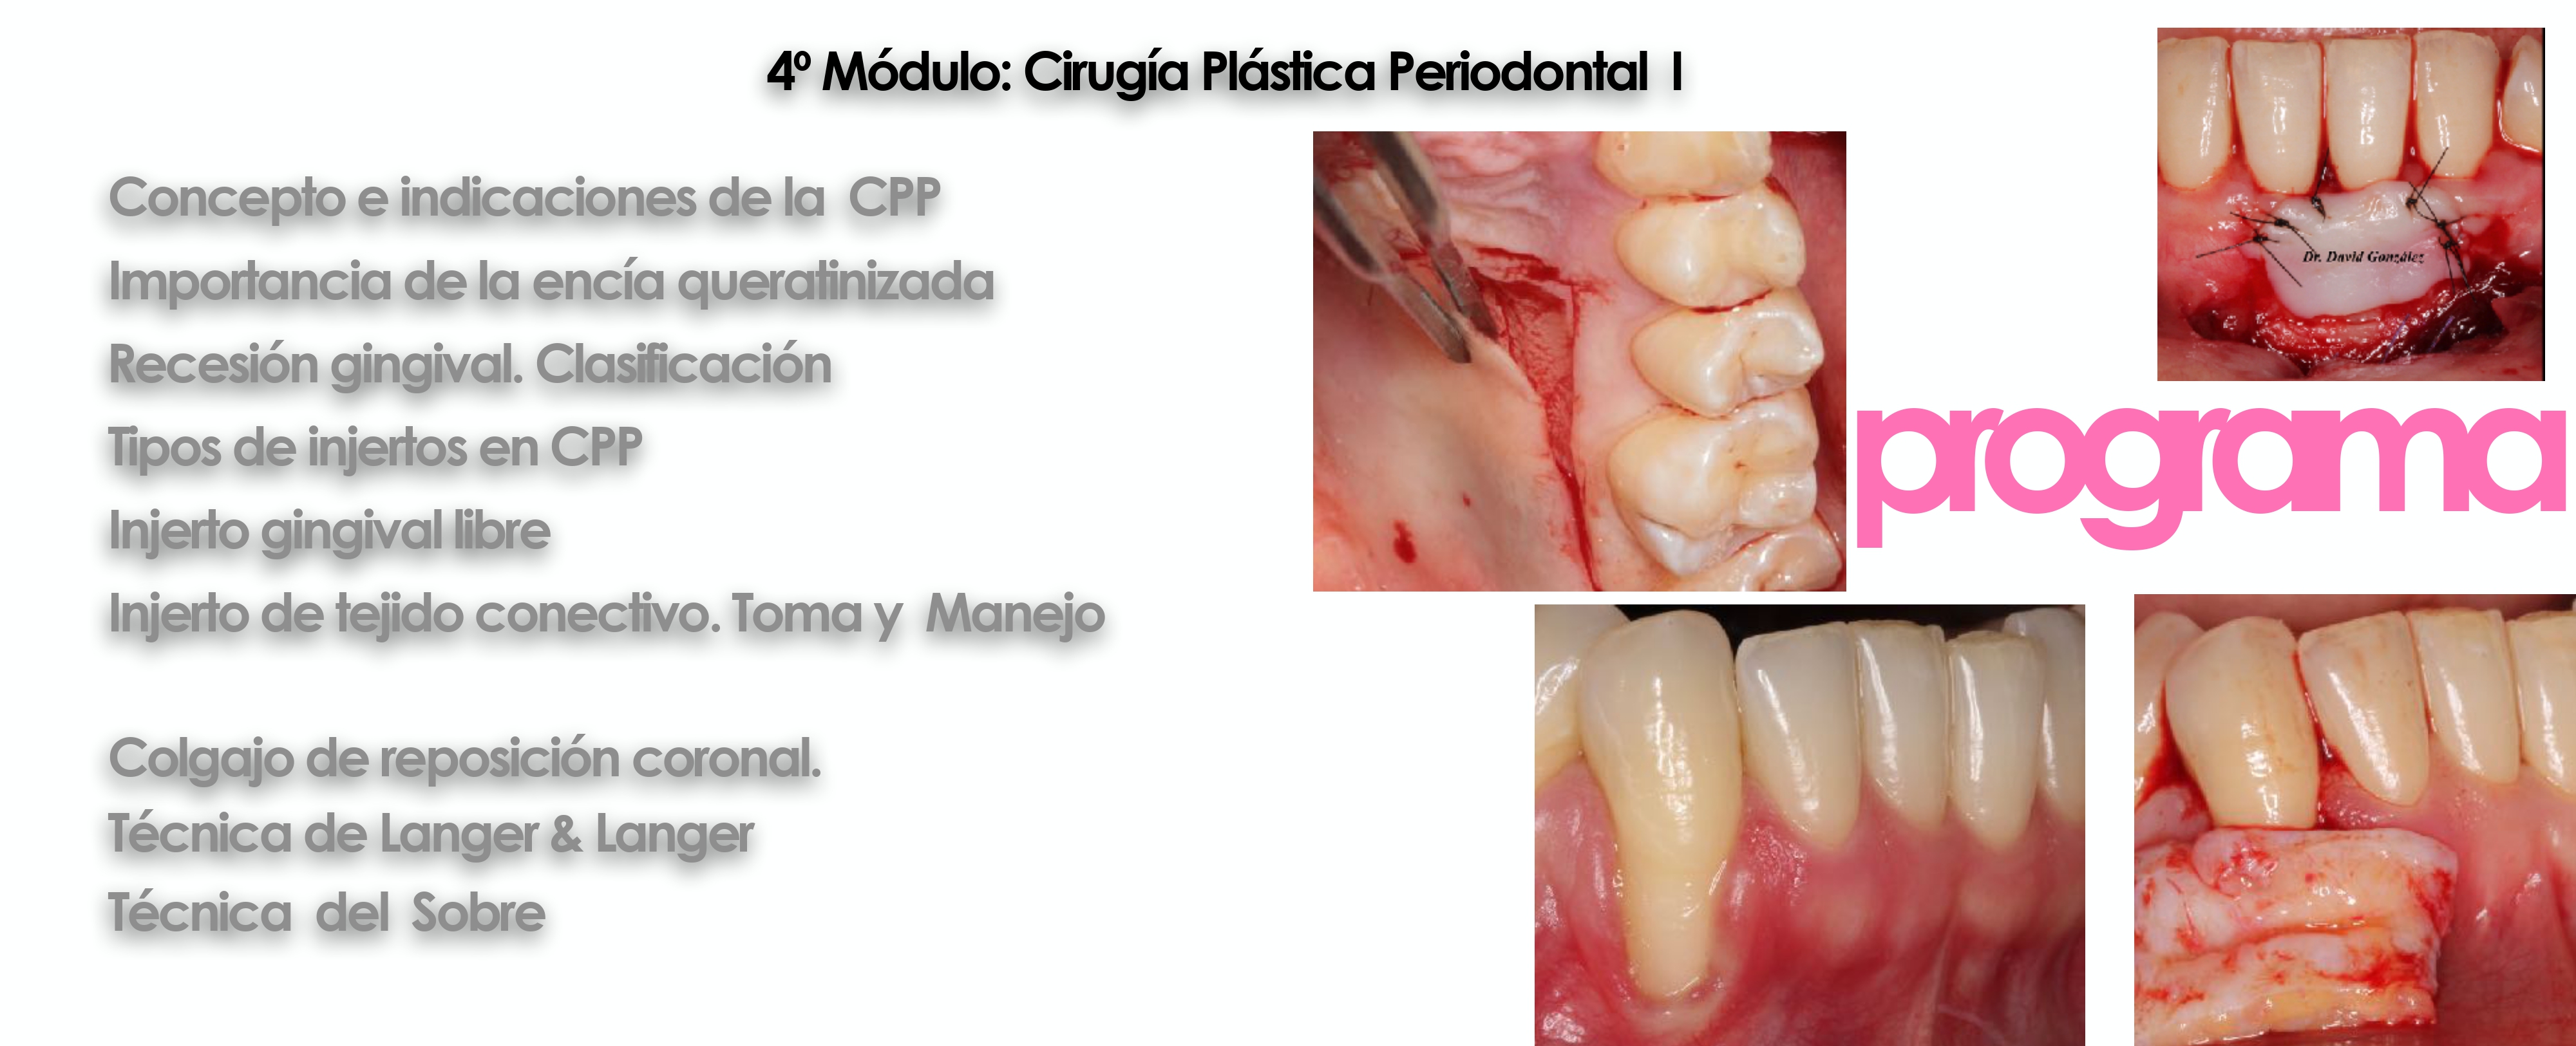 Curso cirugía periodontal e implantológica 19